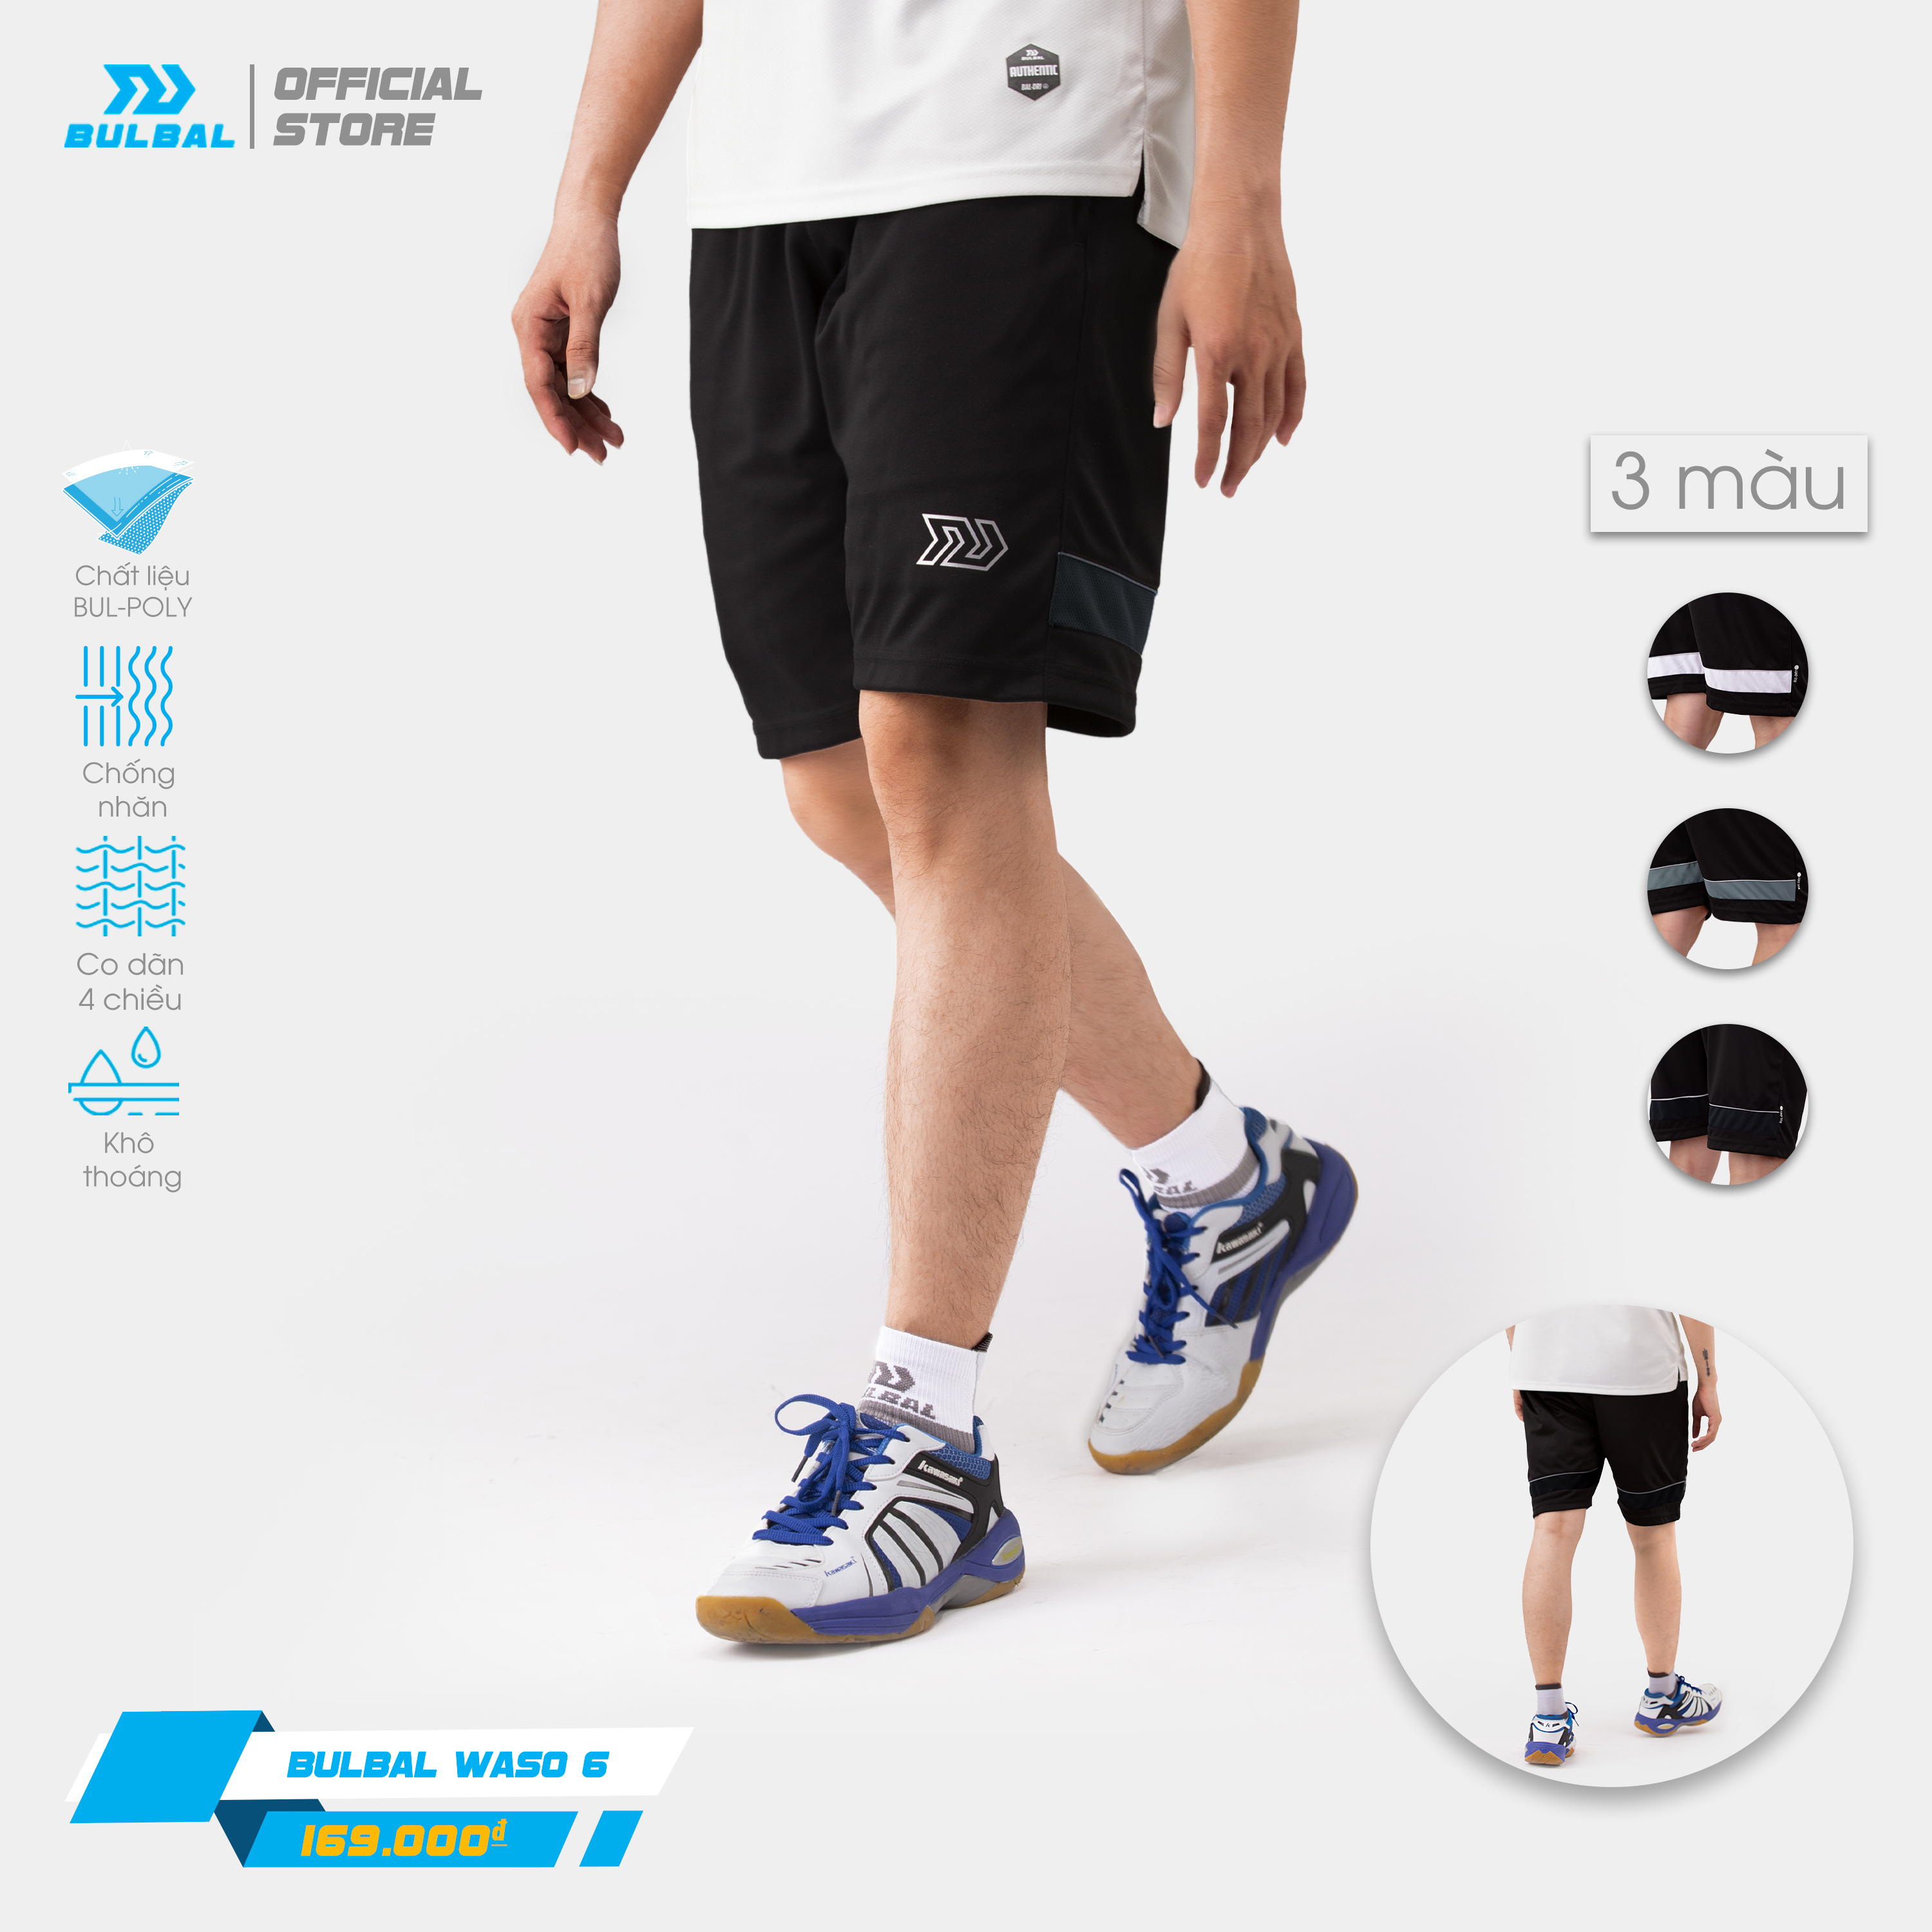 Quần short thể thao Bulbal Waso 6 cao cấp, chất vải Si-giãn co giãn 4 chiều chống nhăn hiệu quả, kiểu dáng thể thao